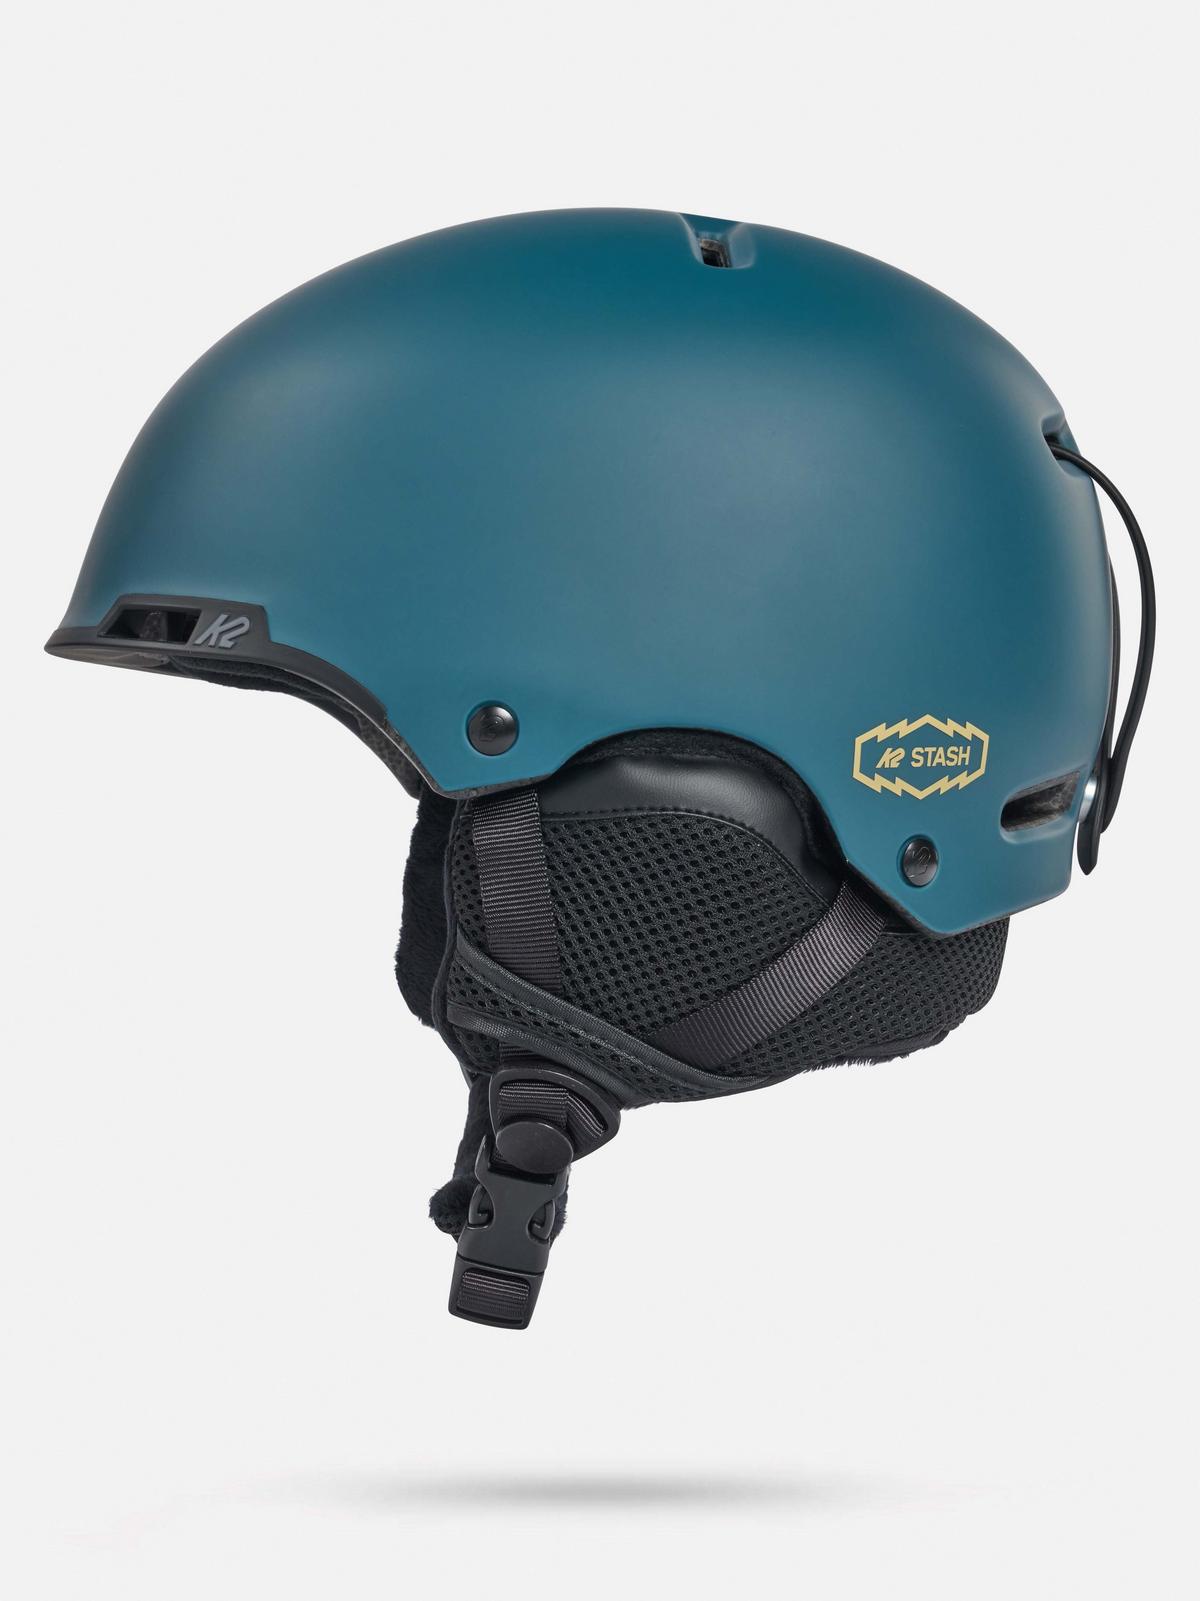 K2 Stash Men's Helmet 2023 | K2 Skis and K2 Snowboarding